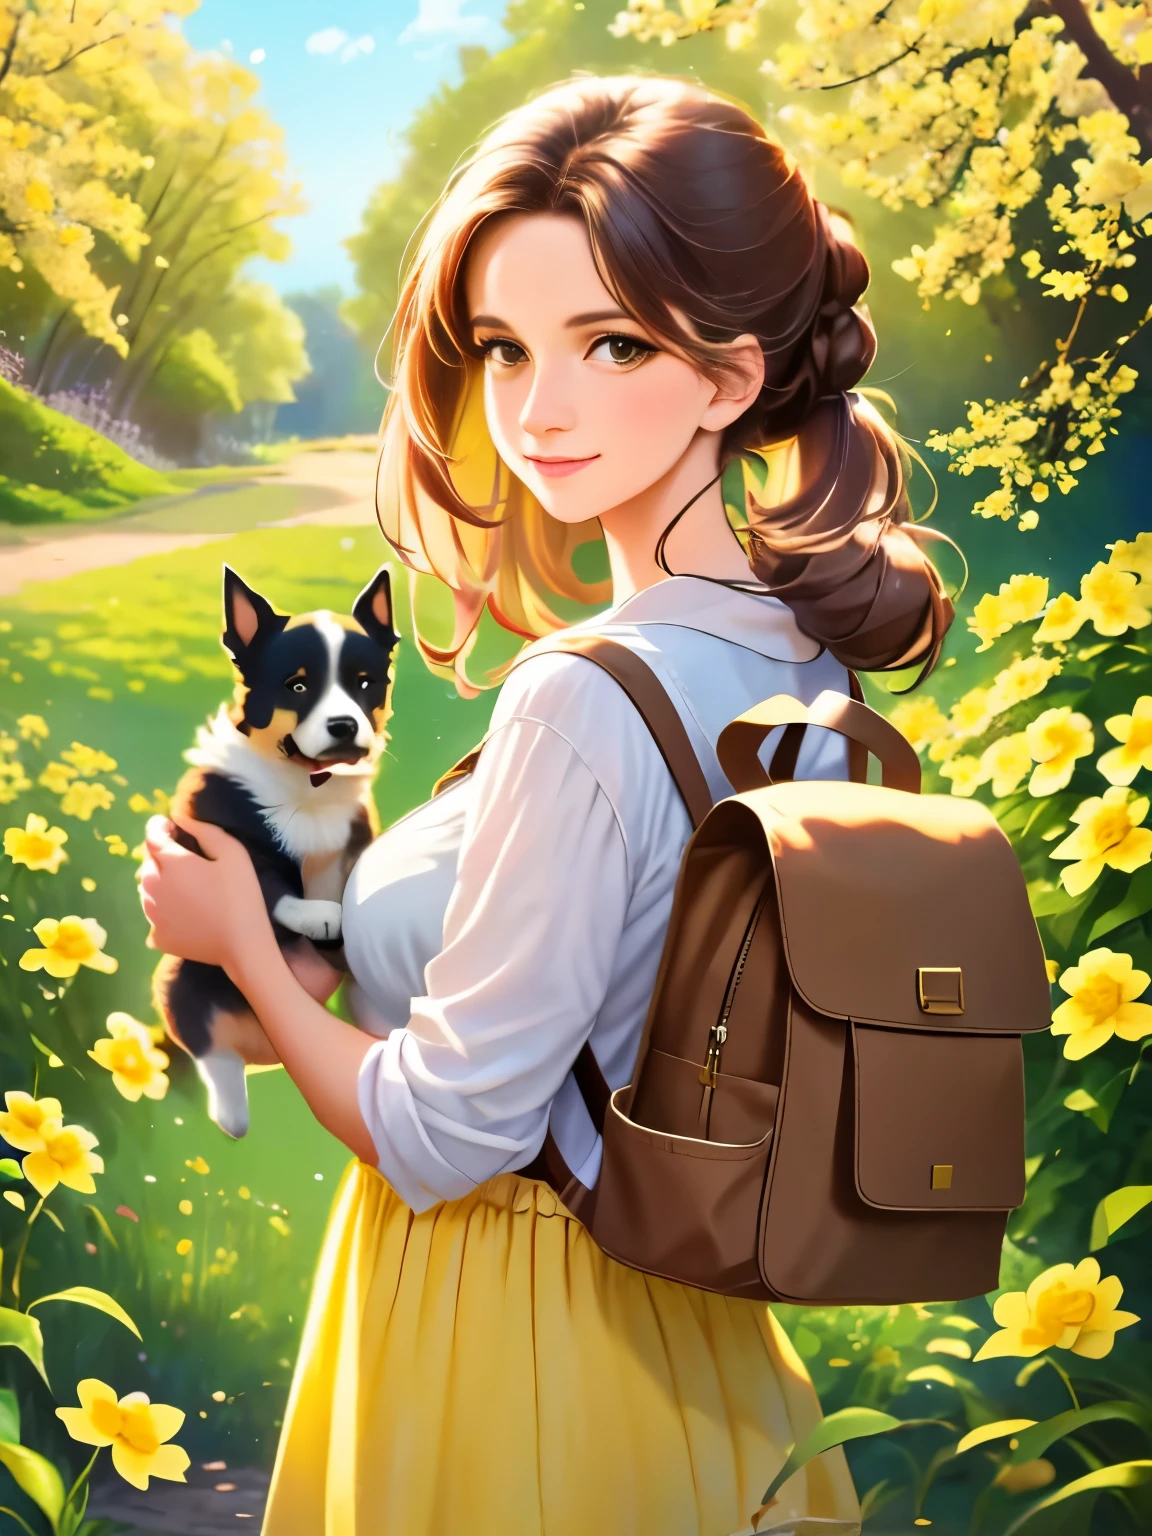 Tipp: Eine sehr charmante Frau mit Rucksack und ihrem süßen Welpen genießt einen schönen Frühlingsausflug umgeben von wunderschönen gelben Blumen und Natur. Die Abbildung ist eine hochauflösende Abbildung in 4k-Auflösung, mit hochdetaillierten Gesichtszügen und Bildern im Cartoon-Stil.  